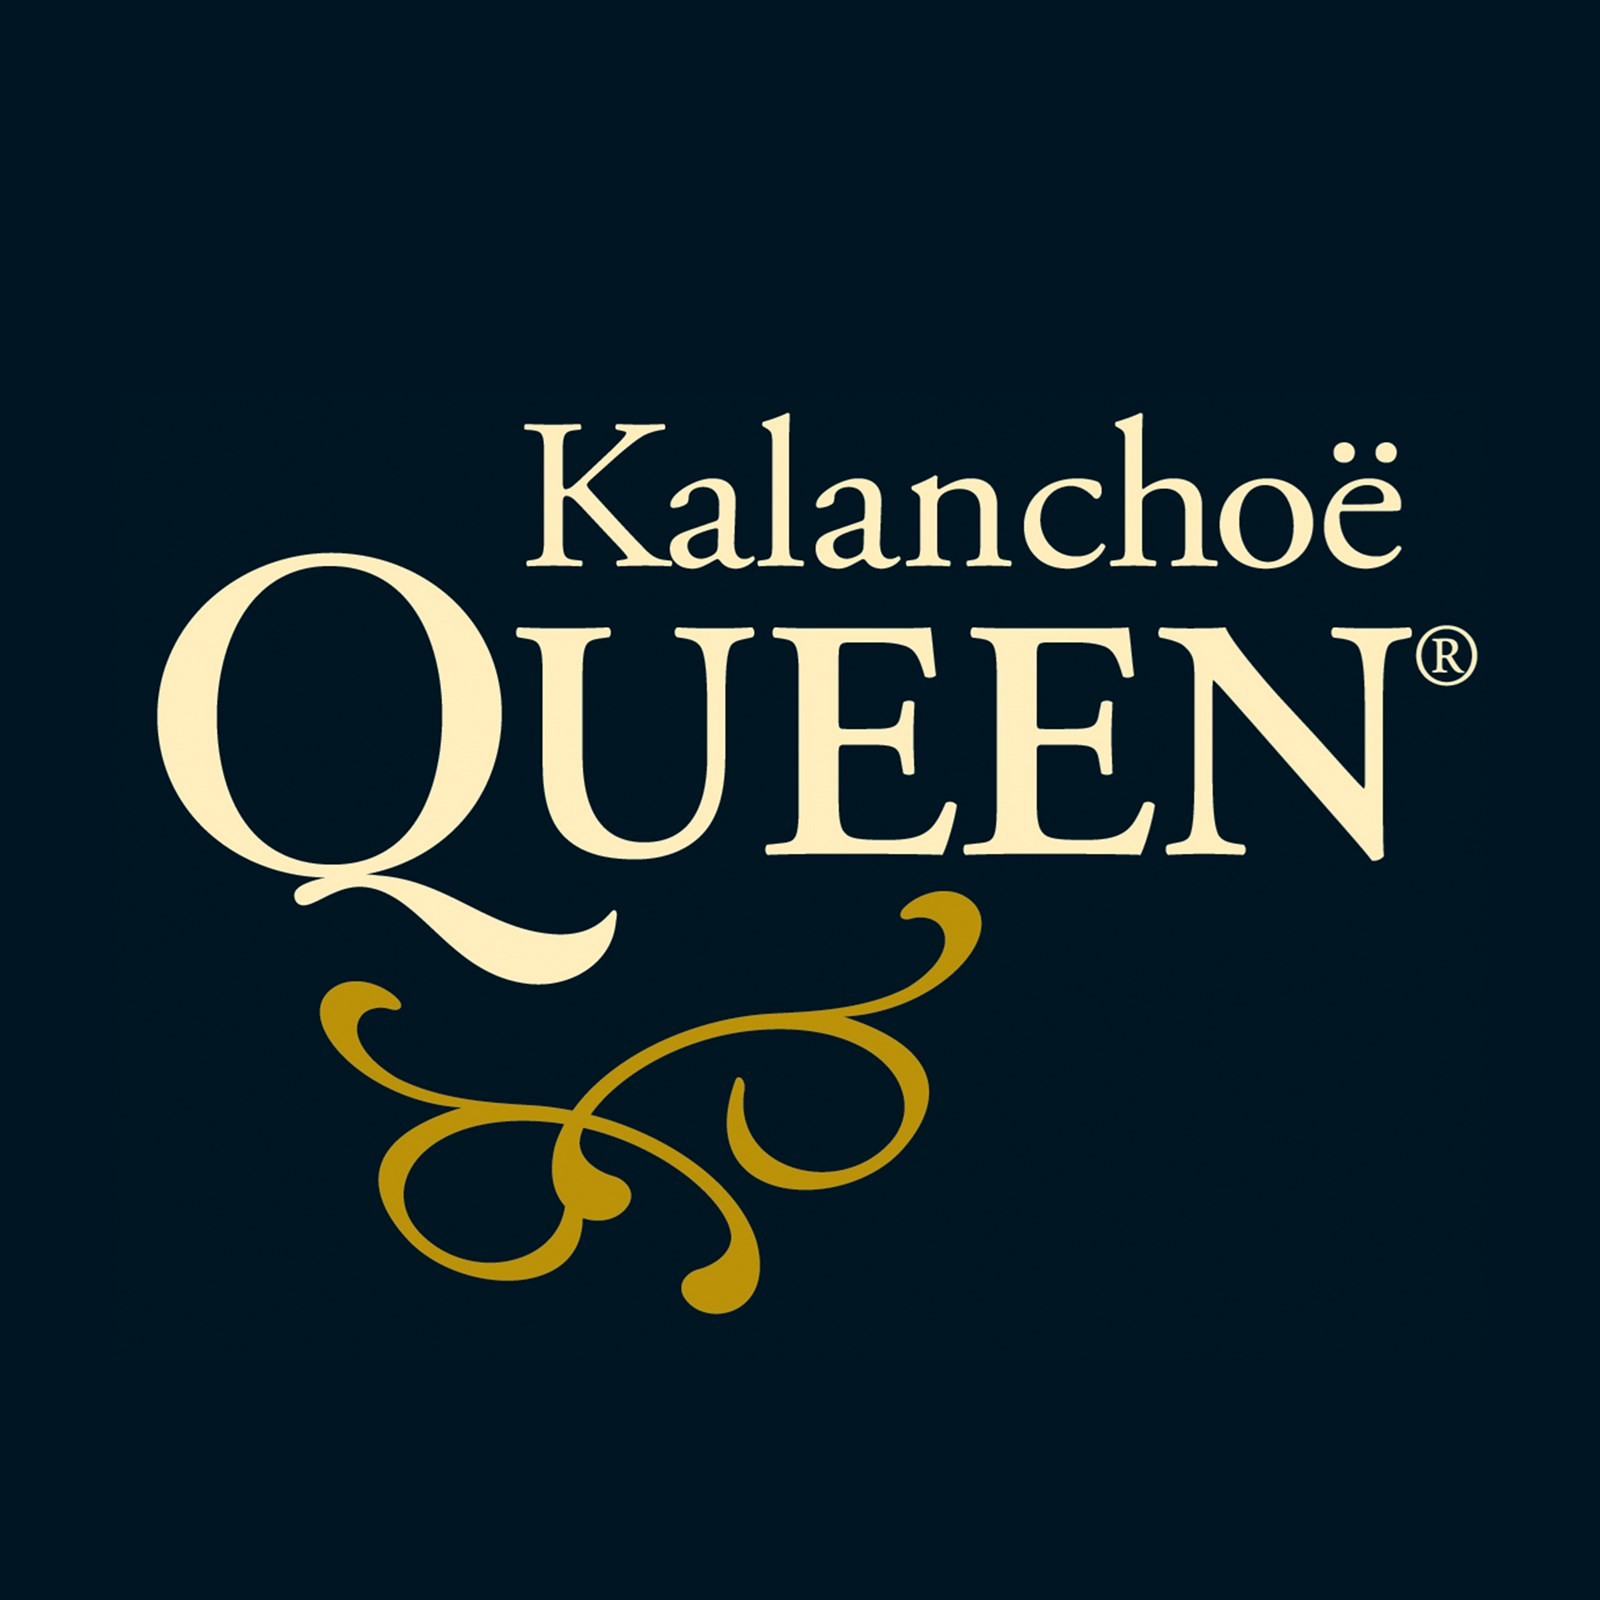 1994: Queen® Kalanchoe